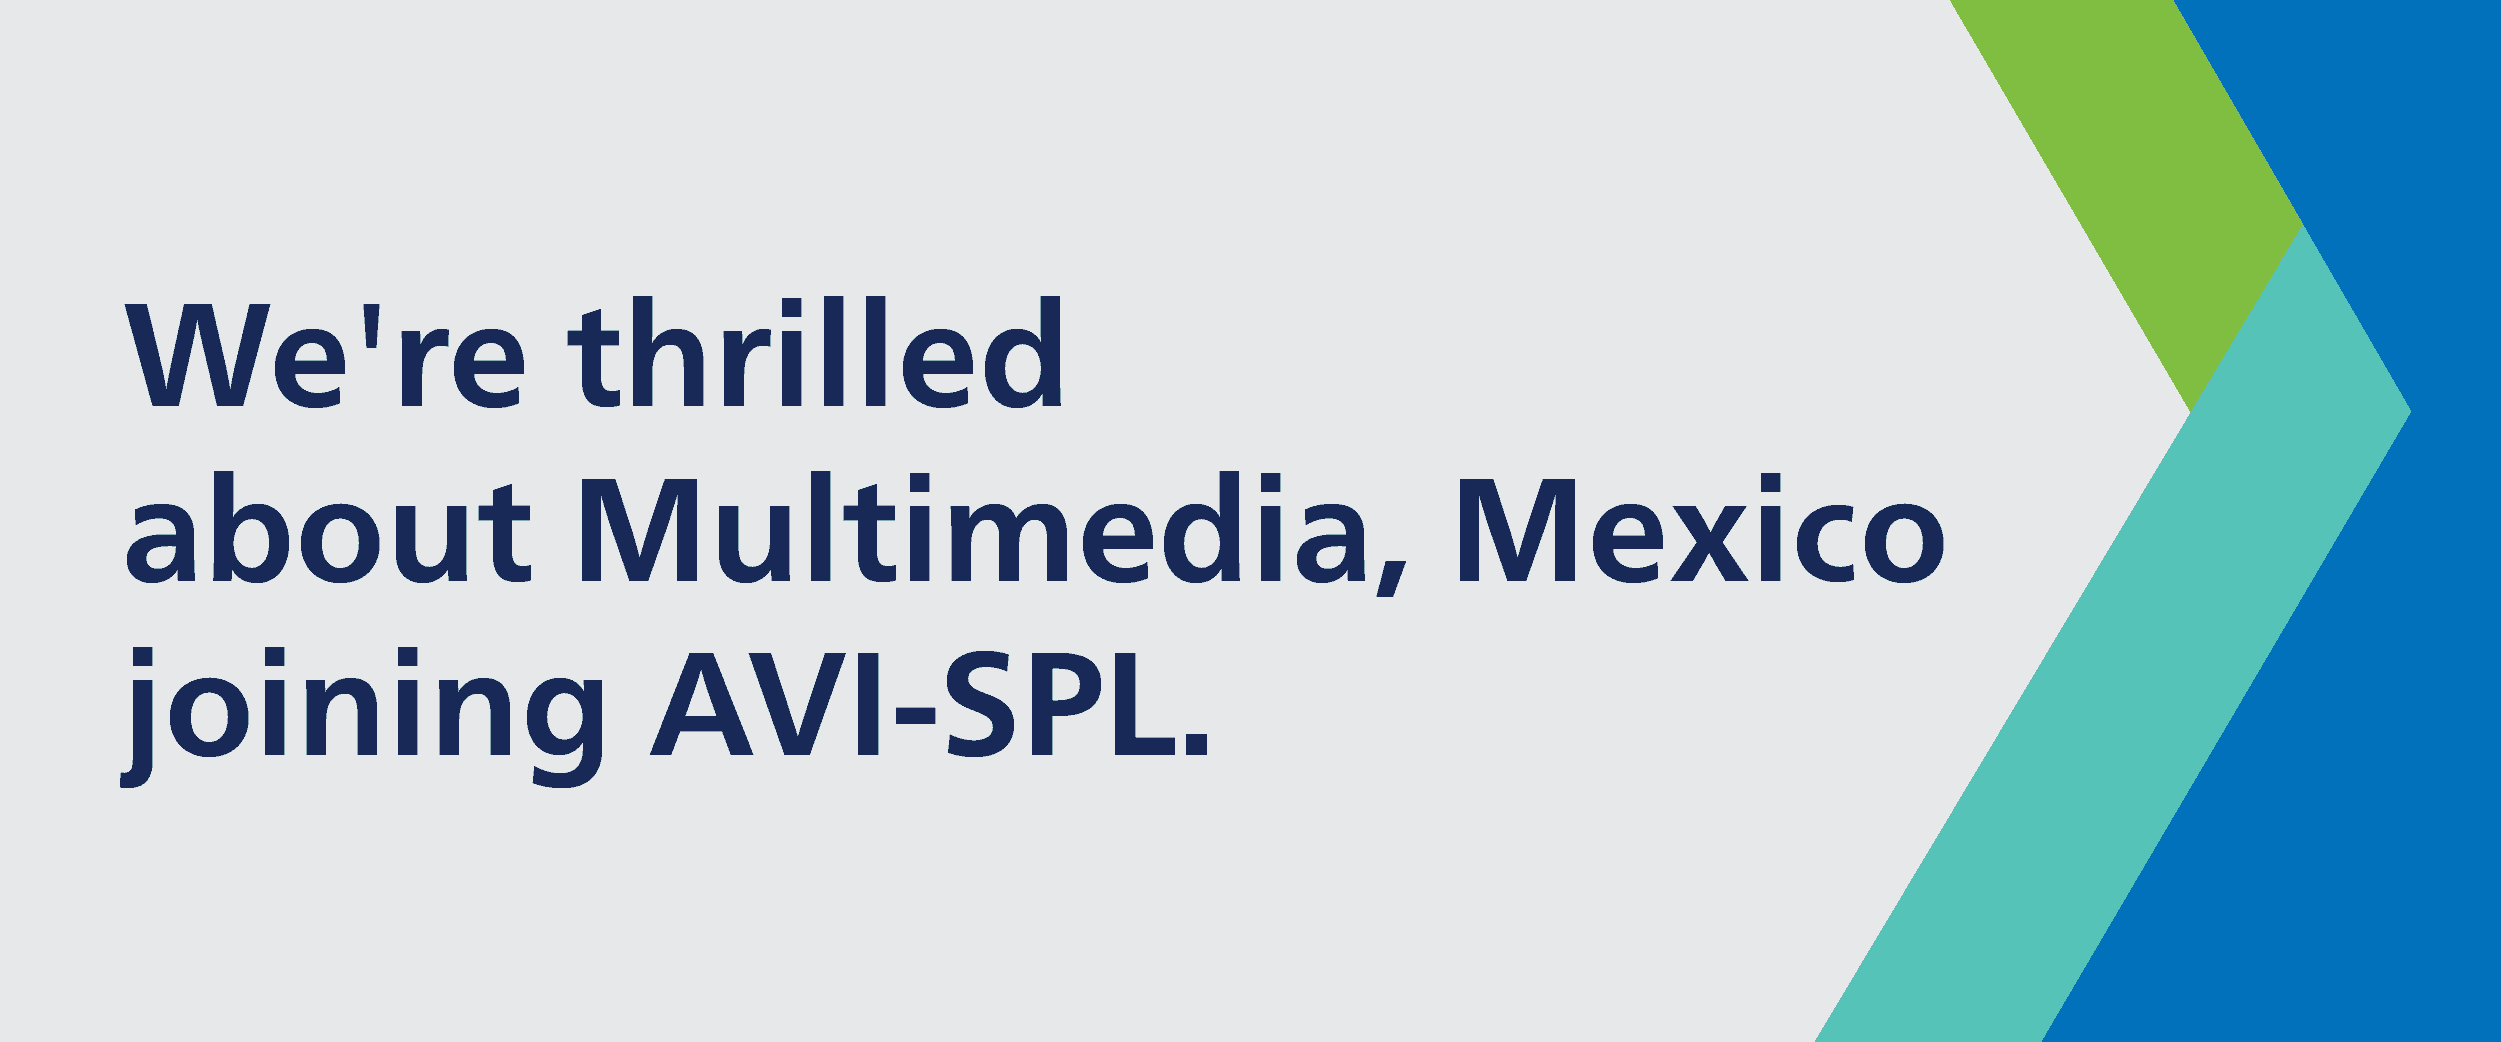 AVI-SPL to acquire Multimedia Mexico